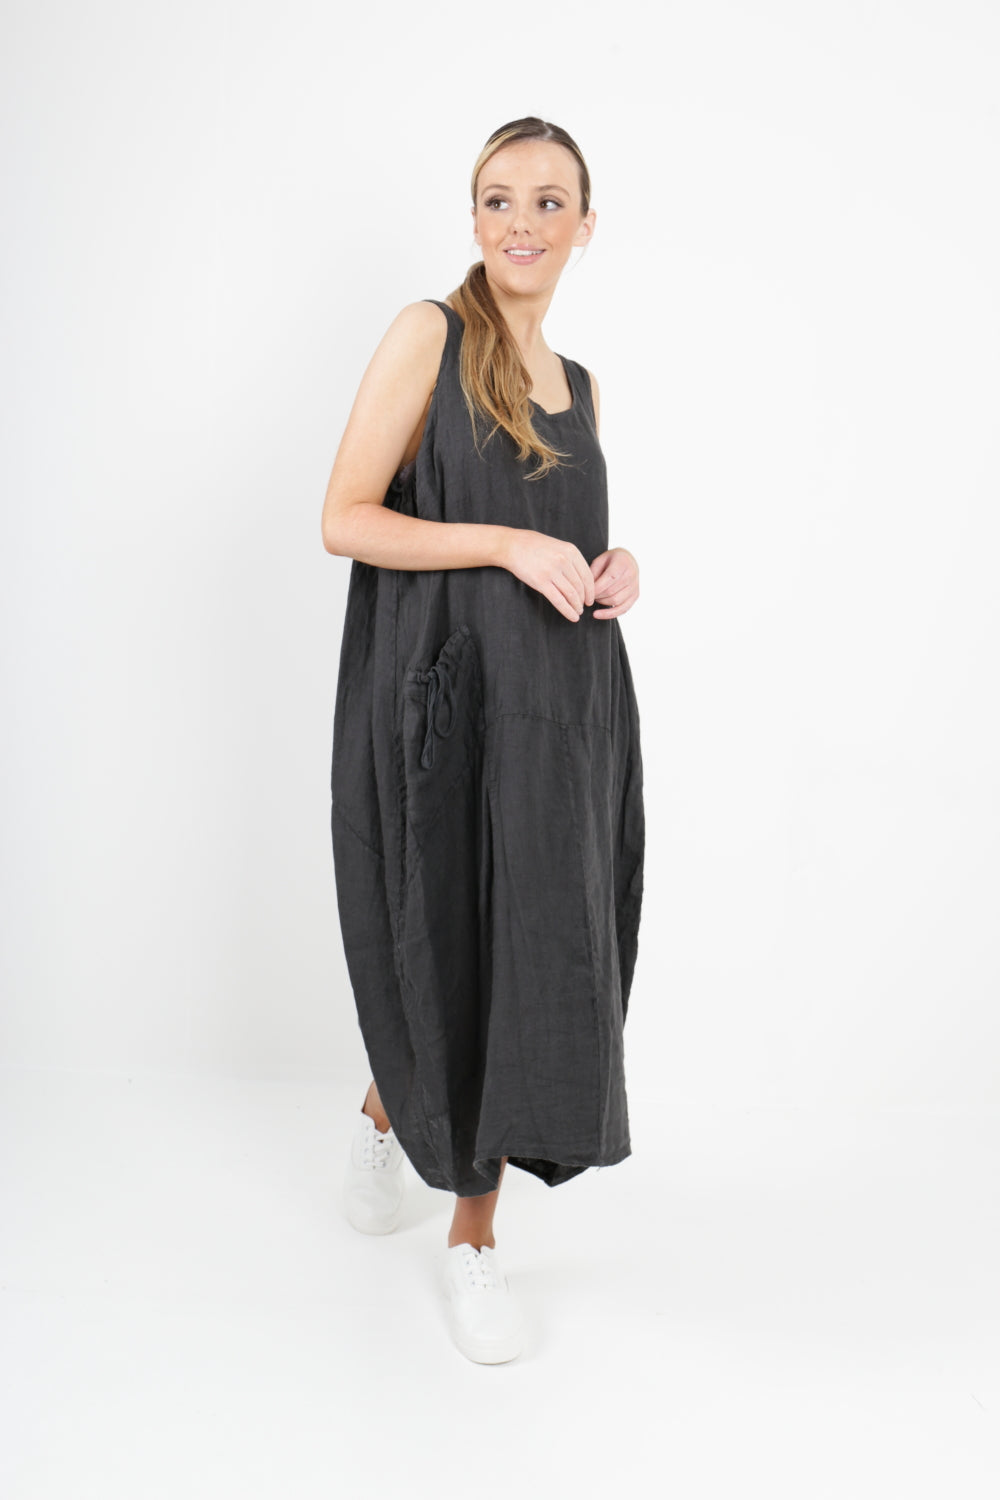 Italian Linen Sleeveless Pocket Vest Dress